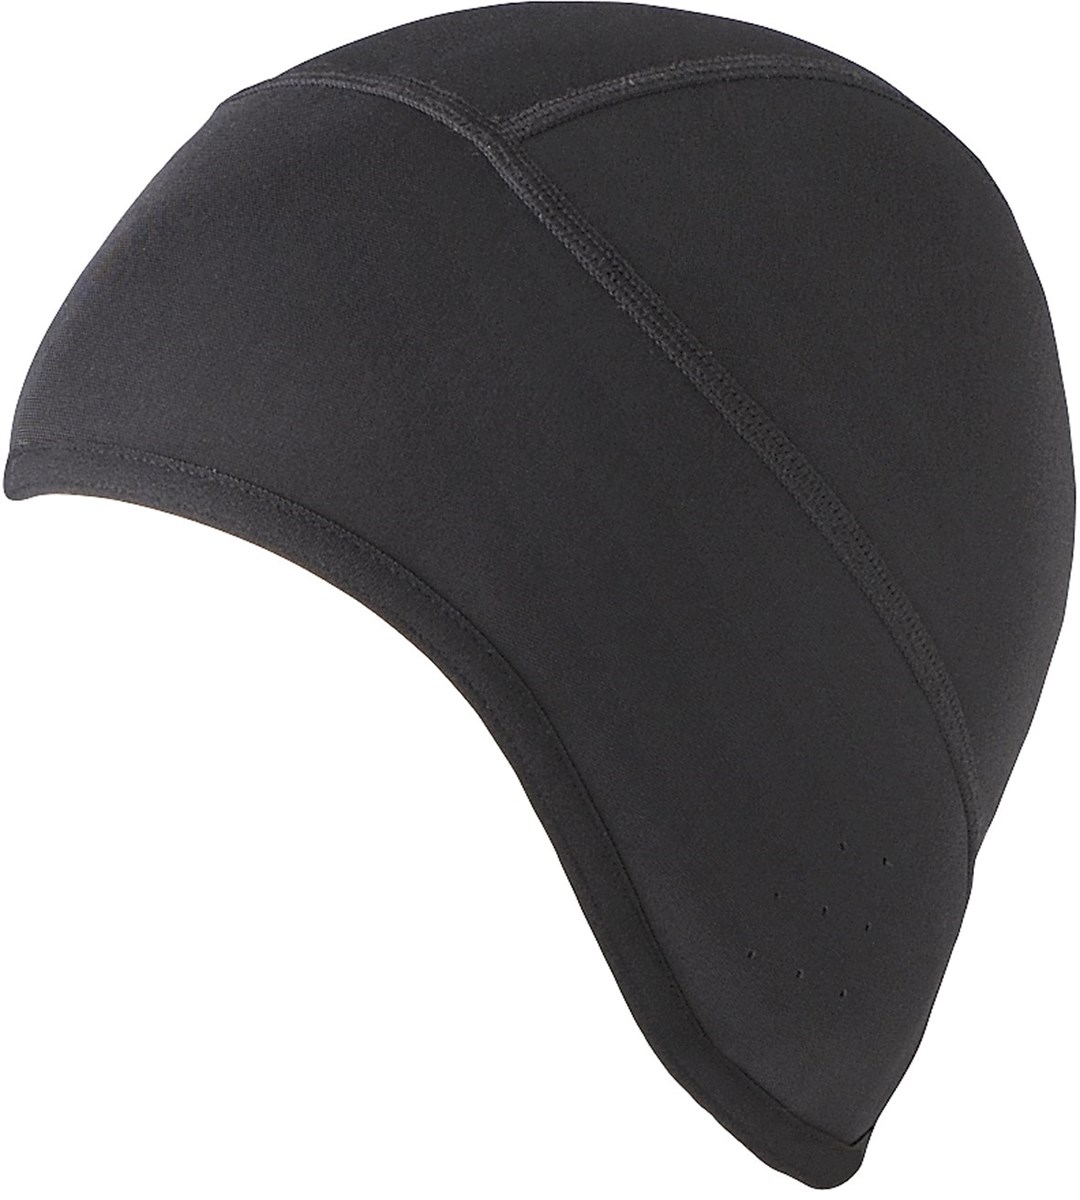 Shimano Under Helmet Cap product image